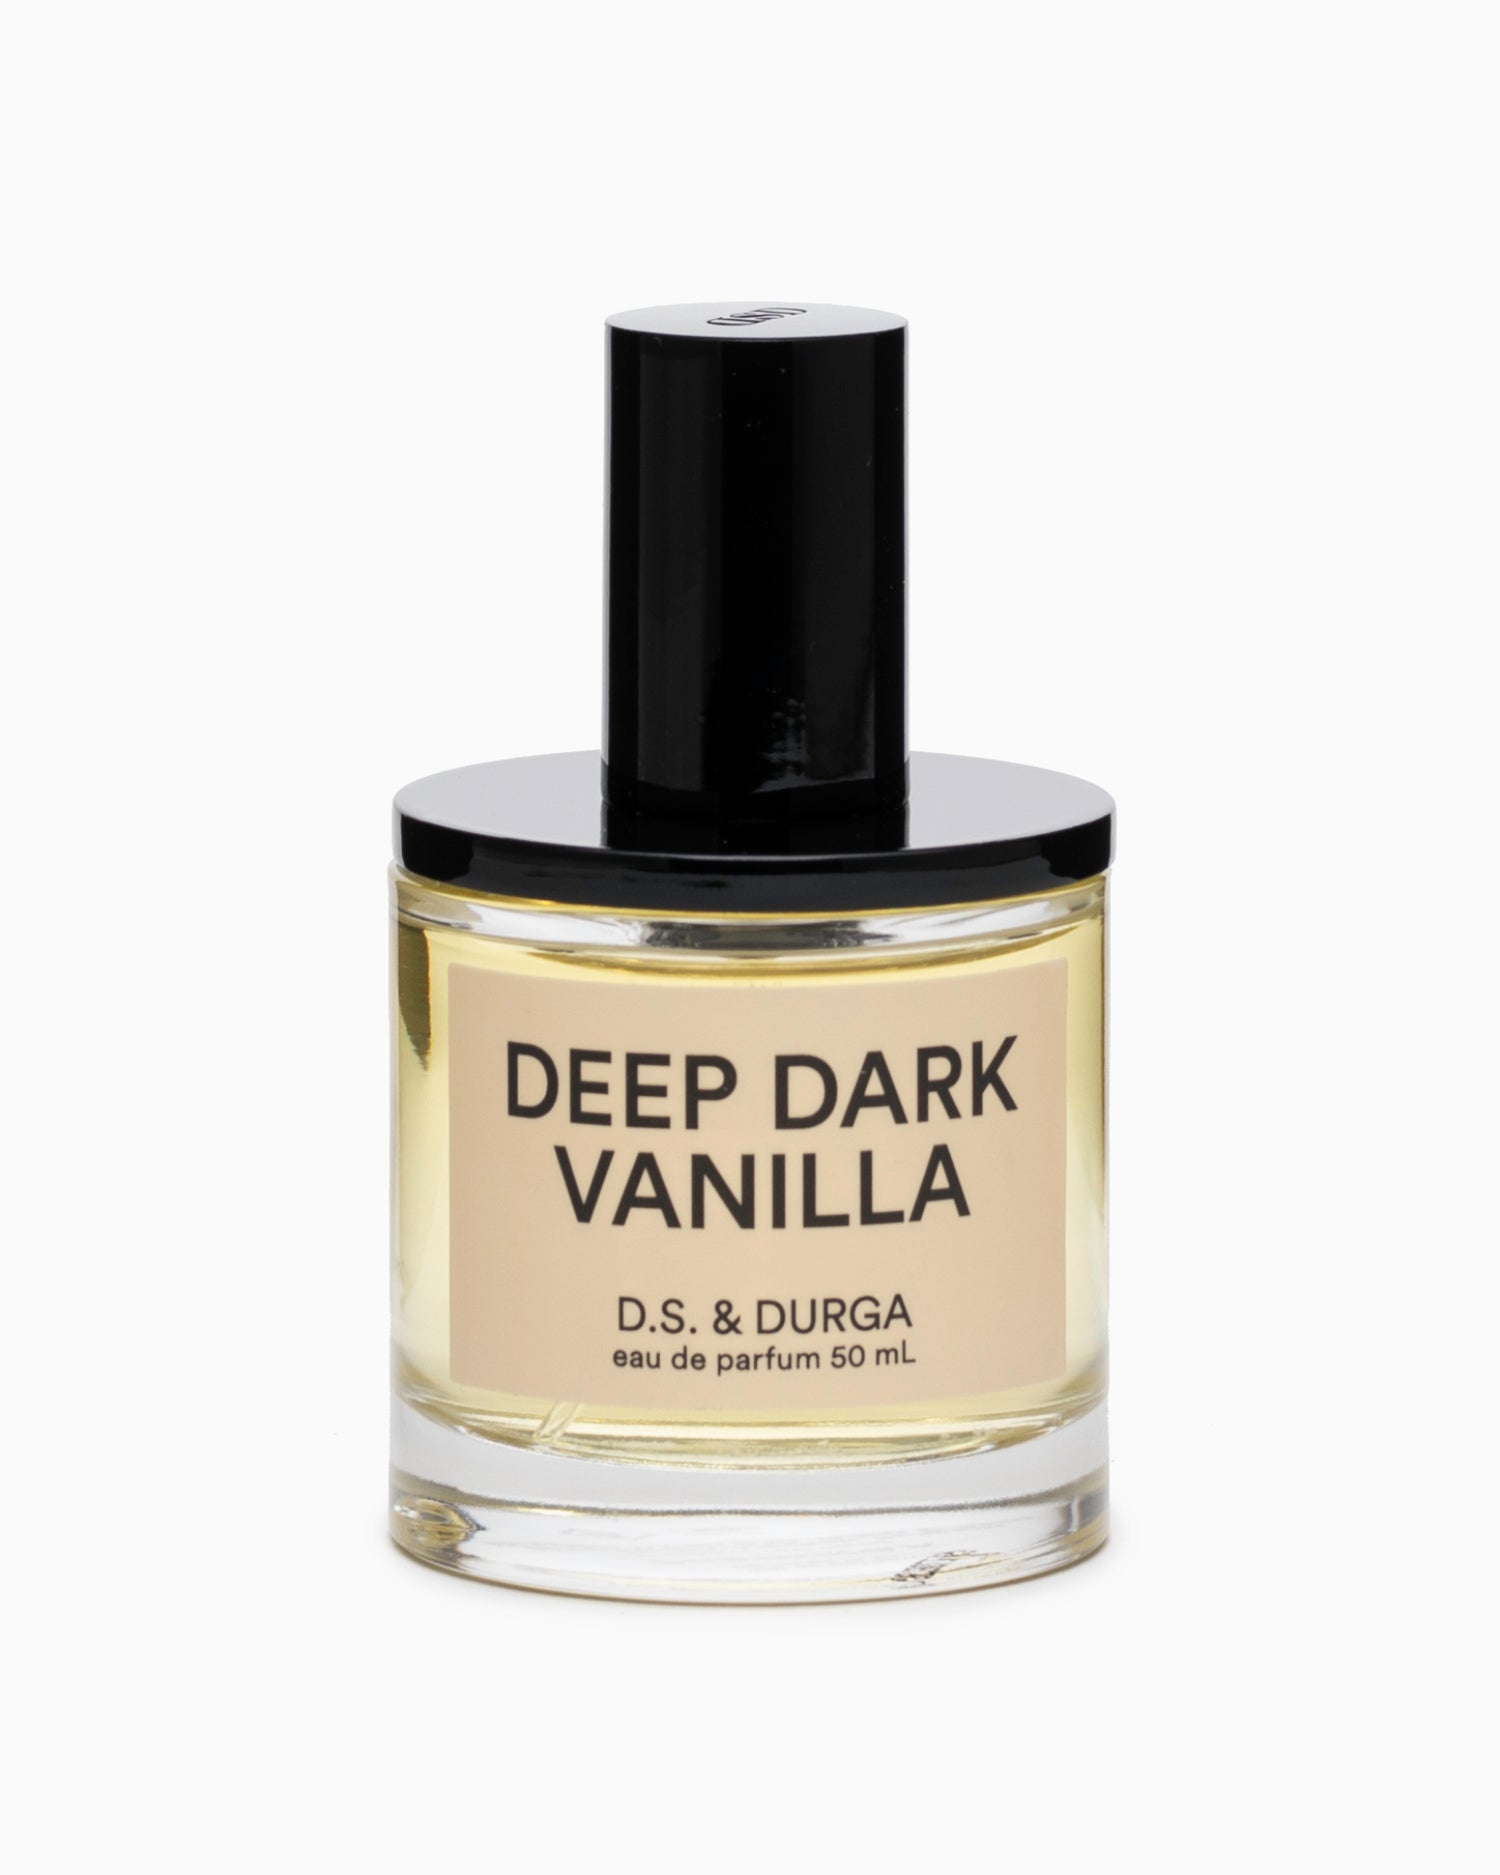 Deep Dark Vanilla 50ml - D.S. & Durga